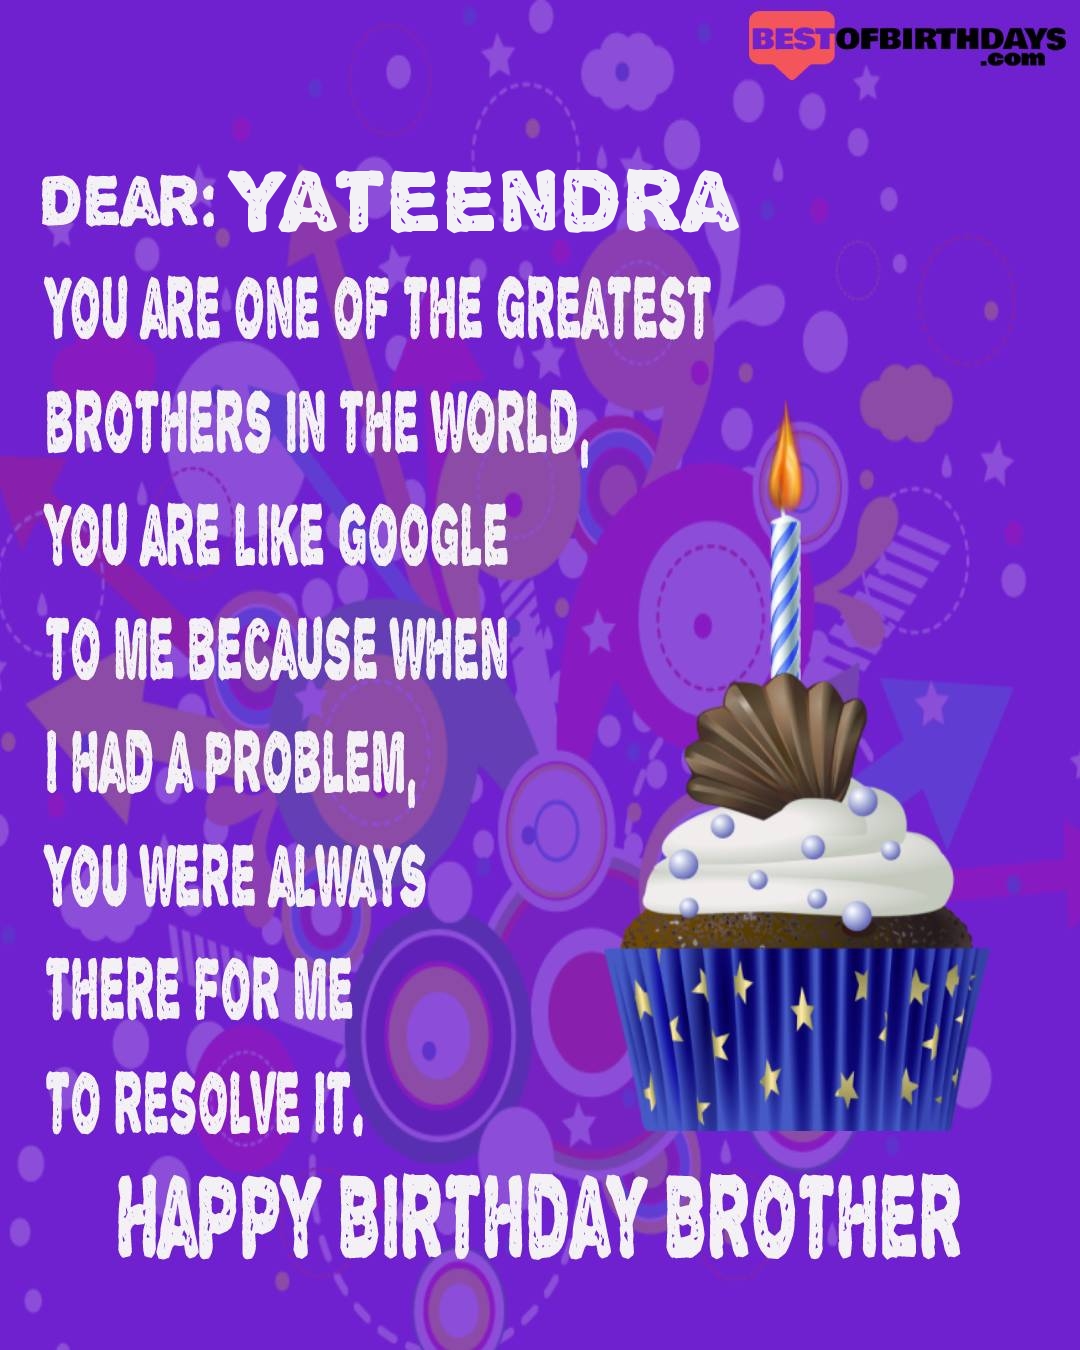 Happy birthday yateendra bhai brother bro